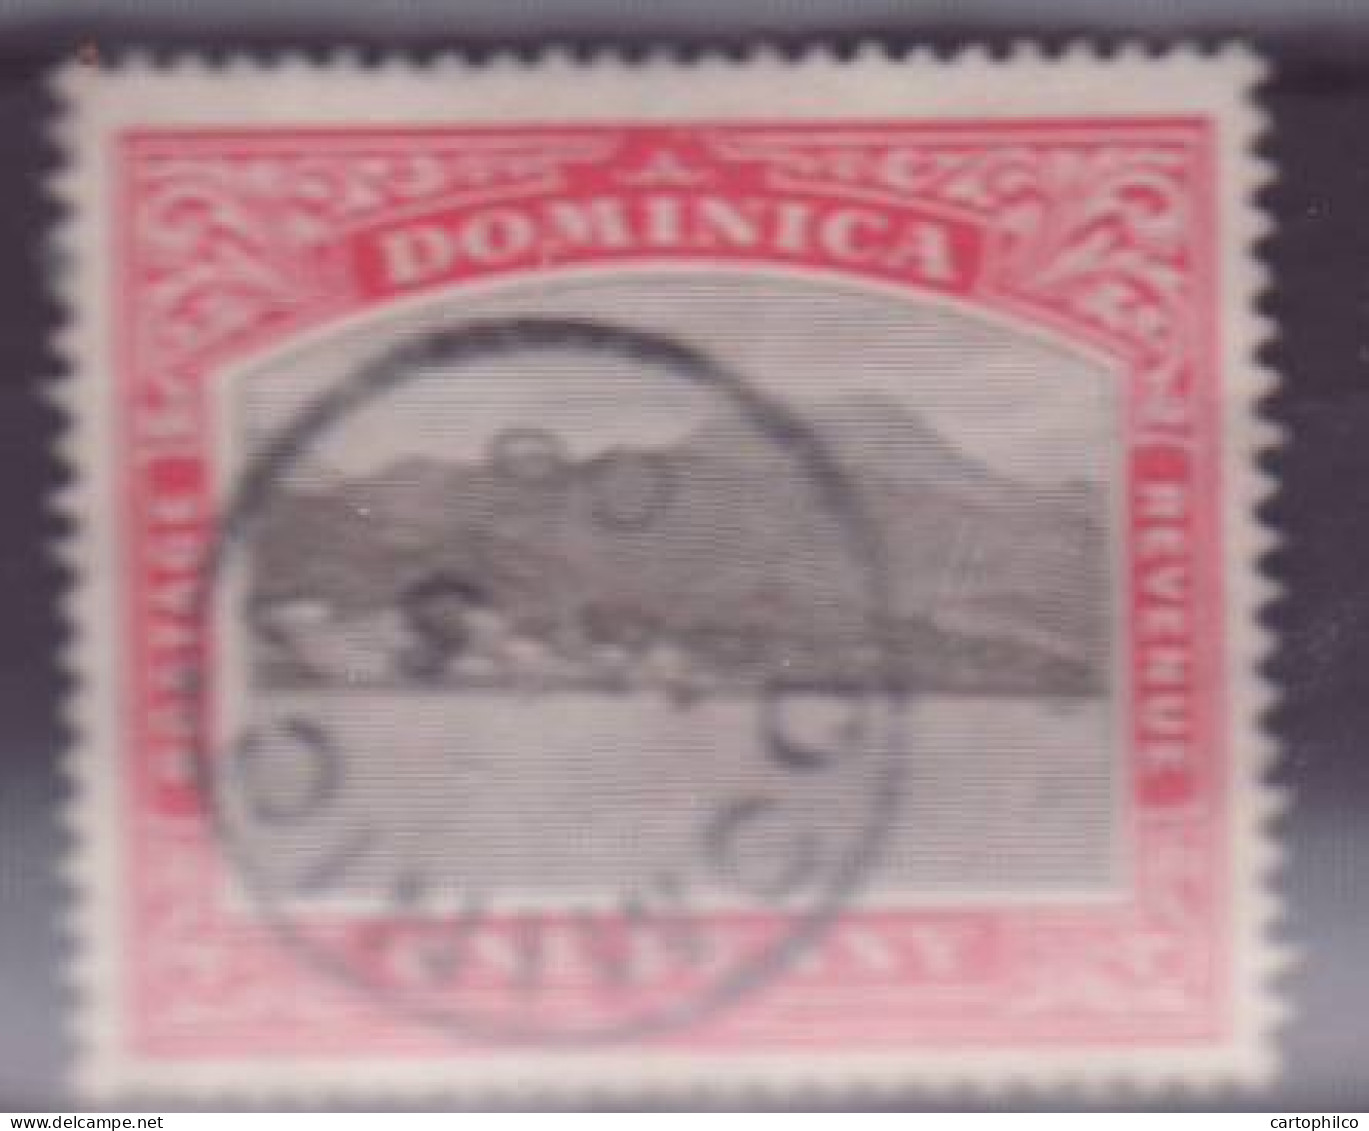 Dominica SG28 1d Roseau From The Sea Dominica Cds VFU - Dominica (...-1978)